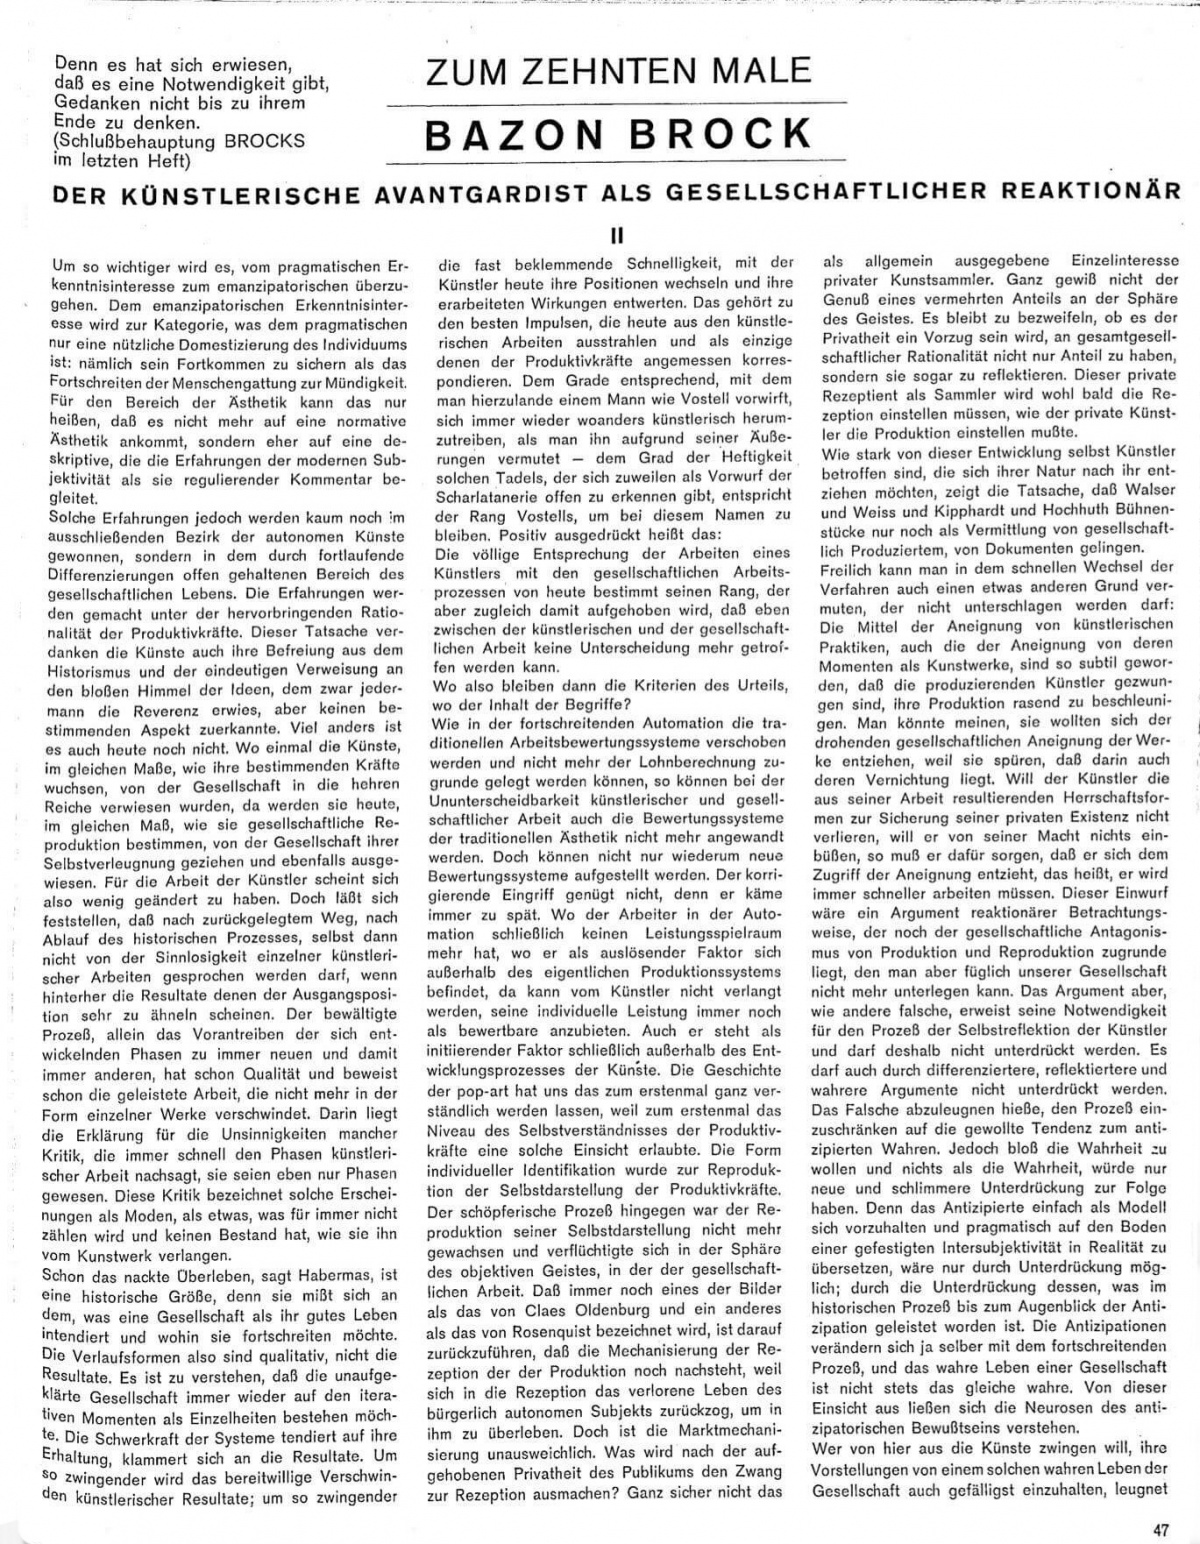 Film Zeitschrift 1/66 Text S.47